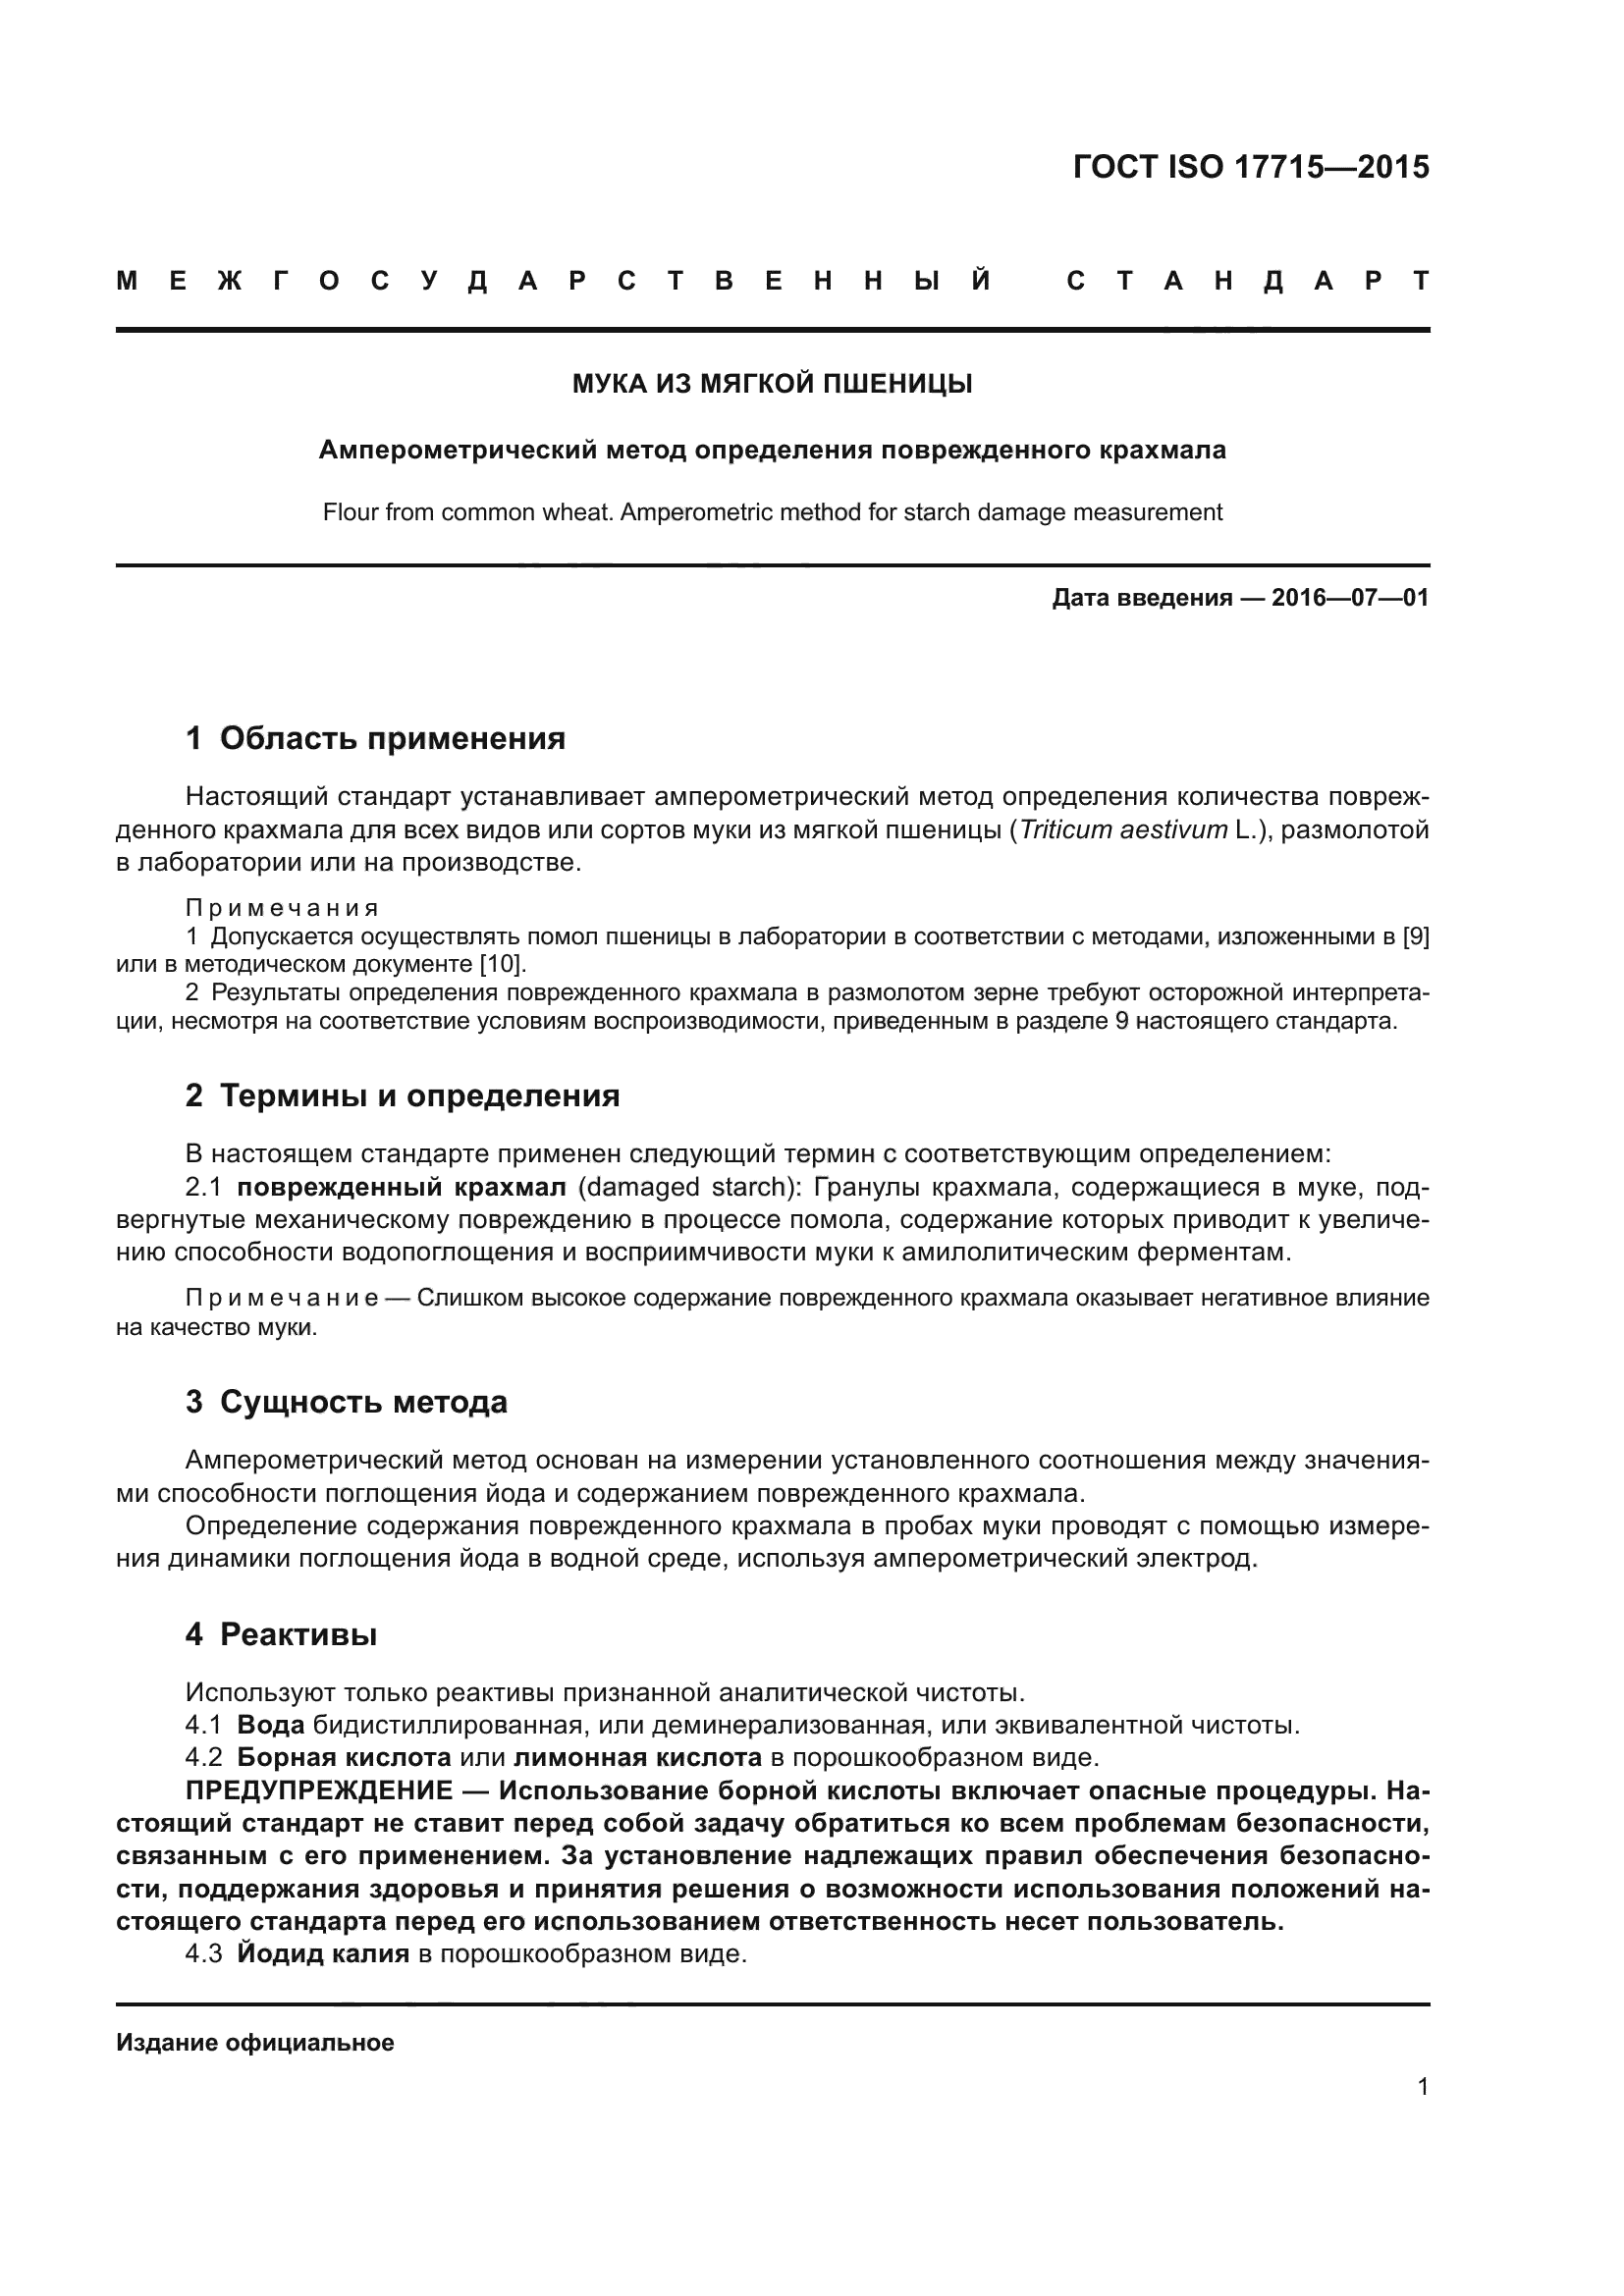 ГОСТ ISO 17715-2015